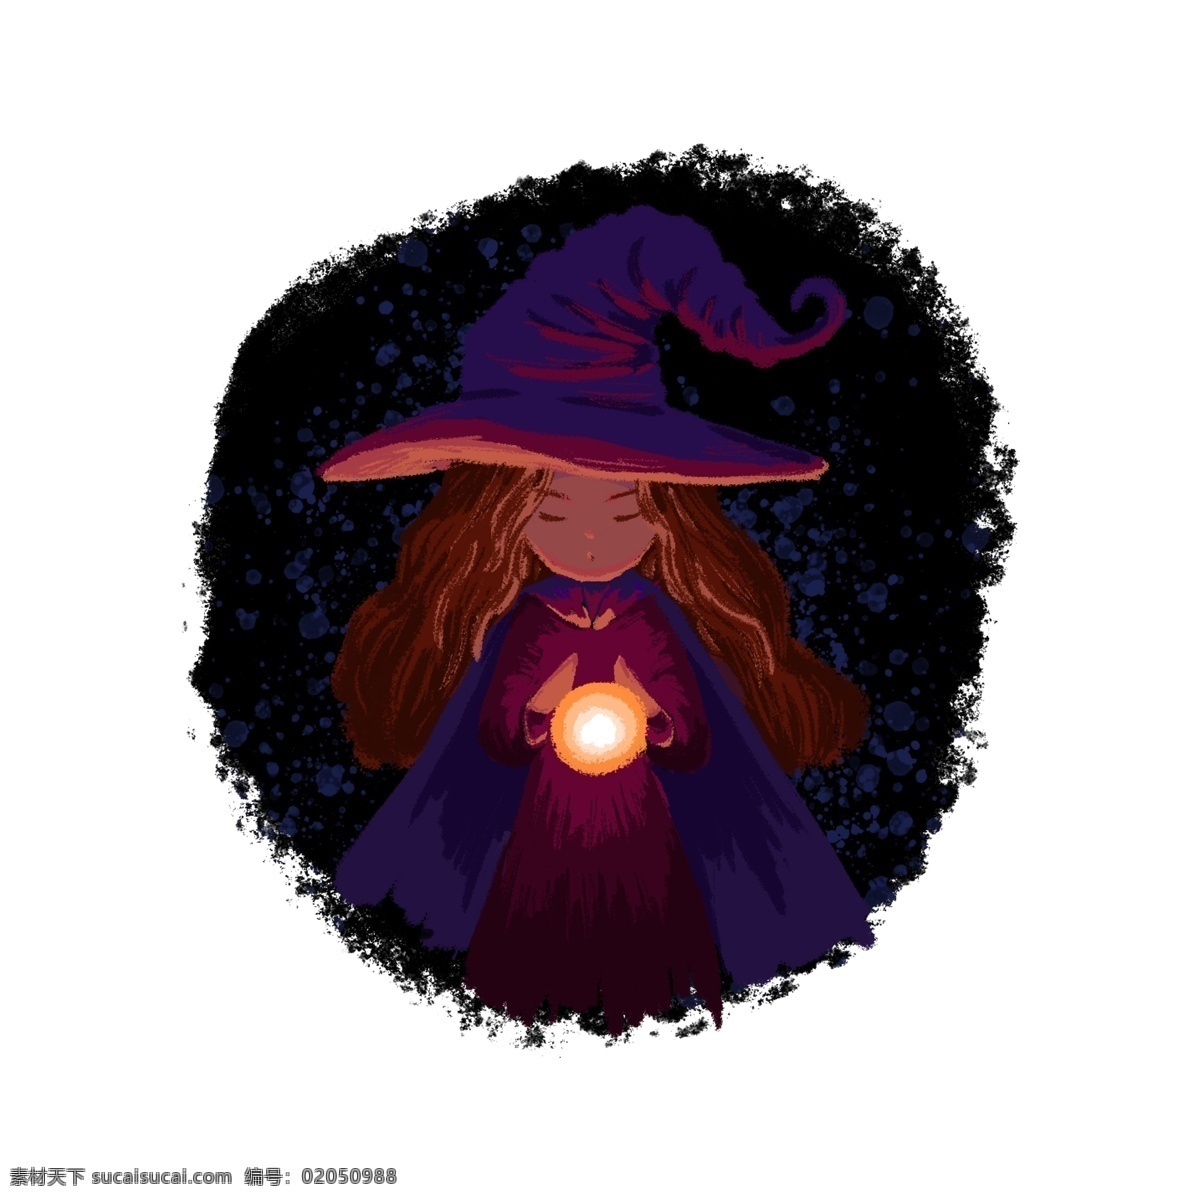 占卜 魔女 女巫 巫婆 水晶球 魔法 手绘 插画